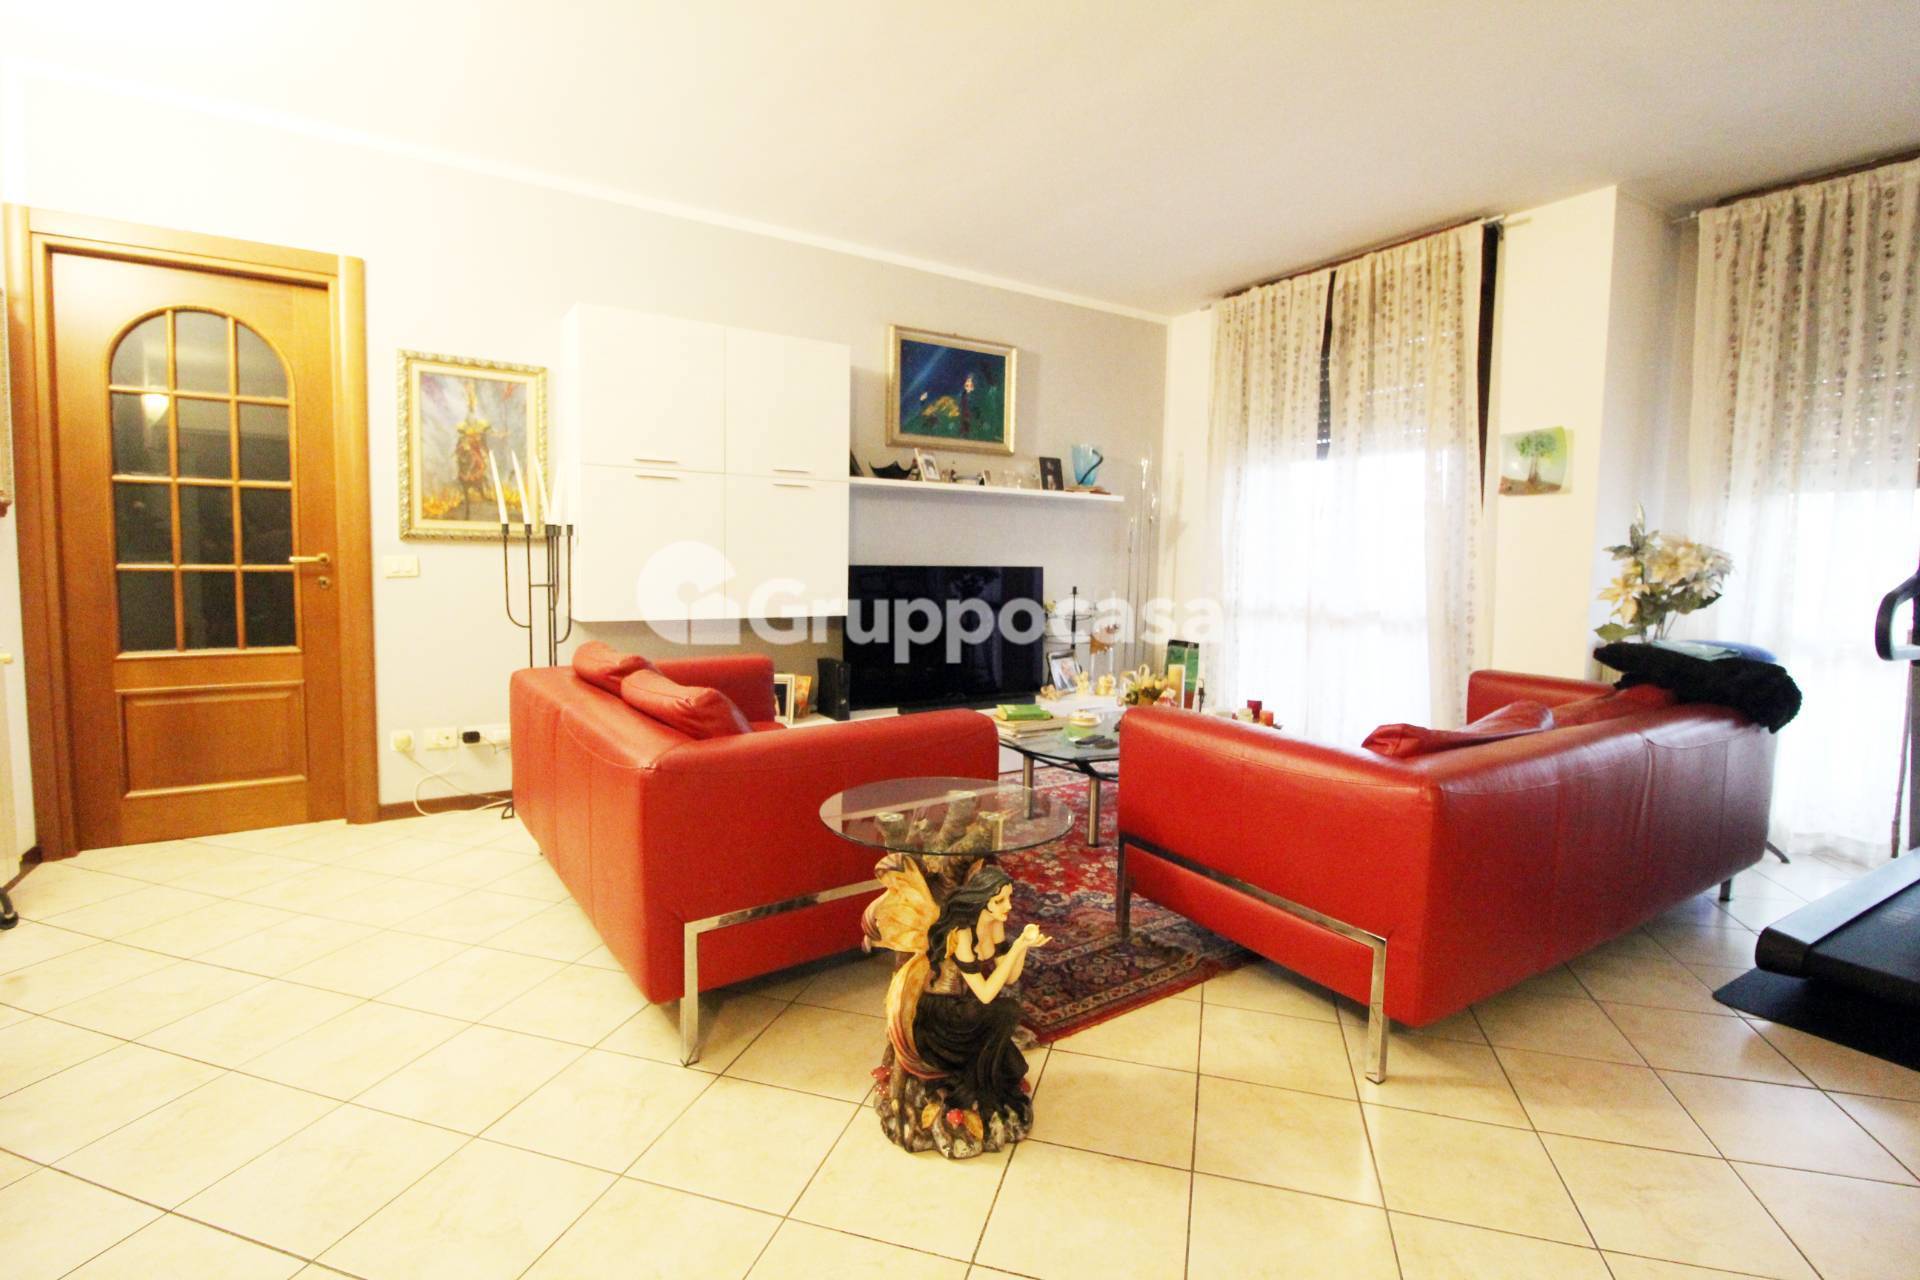 Appartamento in vendita a Magenta, 6 locali, prezzo € 400.000 | PortaleAgenzieImmobiliari.it